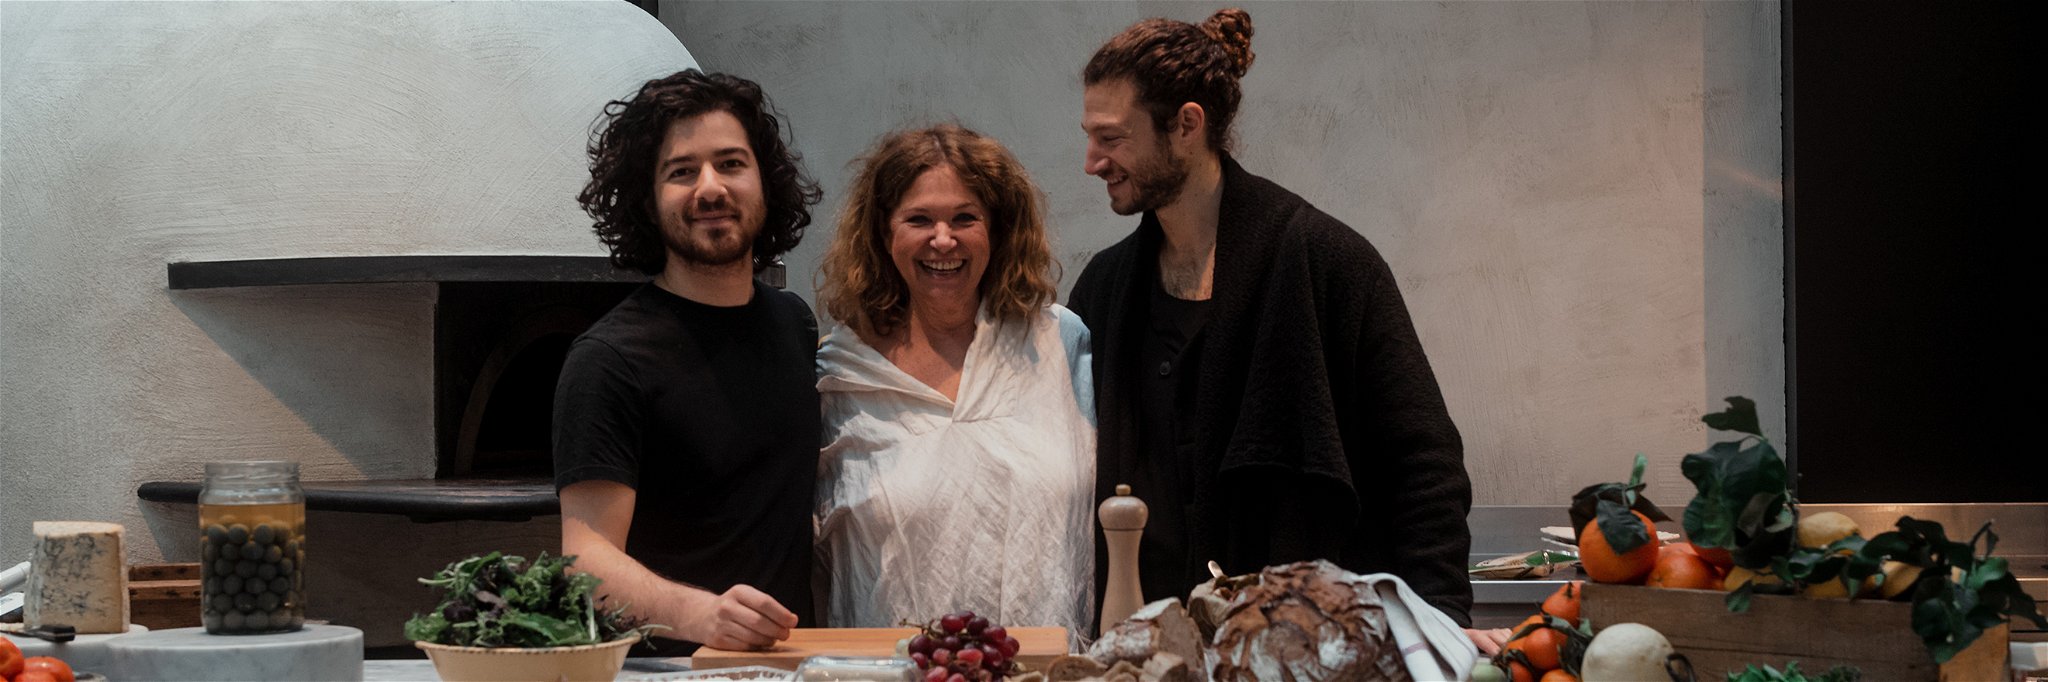 Küchenchef Elihay Berliner bringt mit Haya und Nuriel Molcho ein neues Lokal an den Start (v.l.n.r).